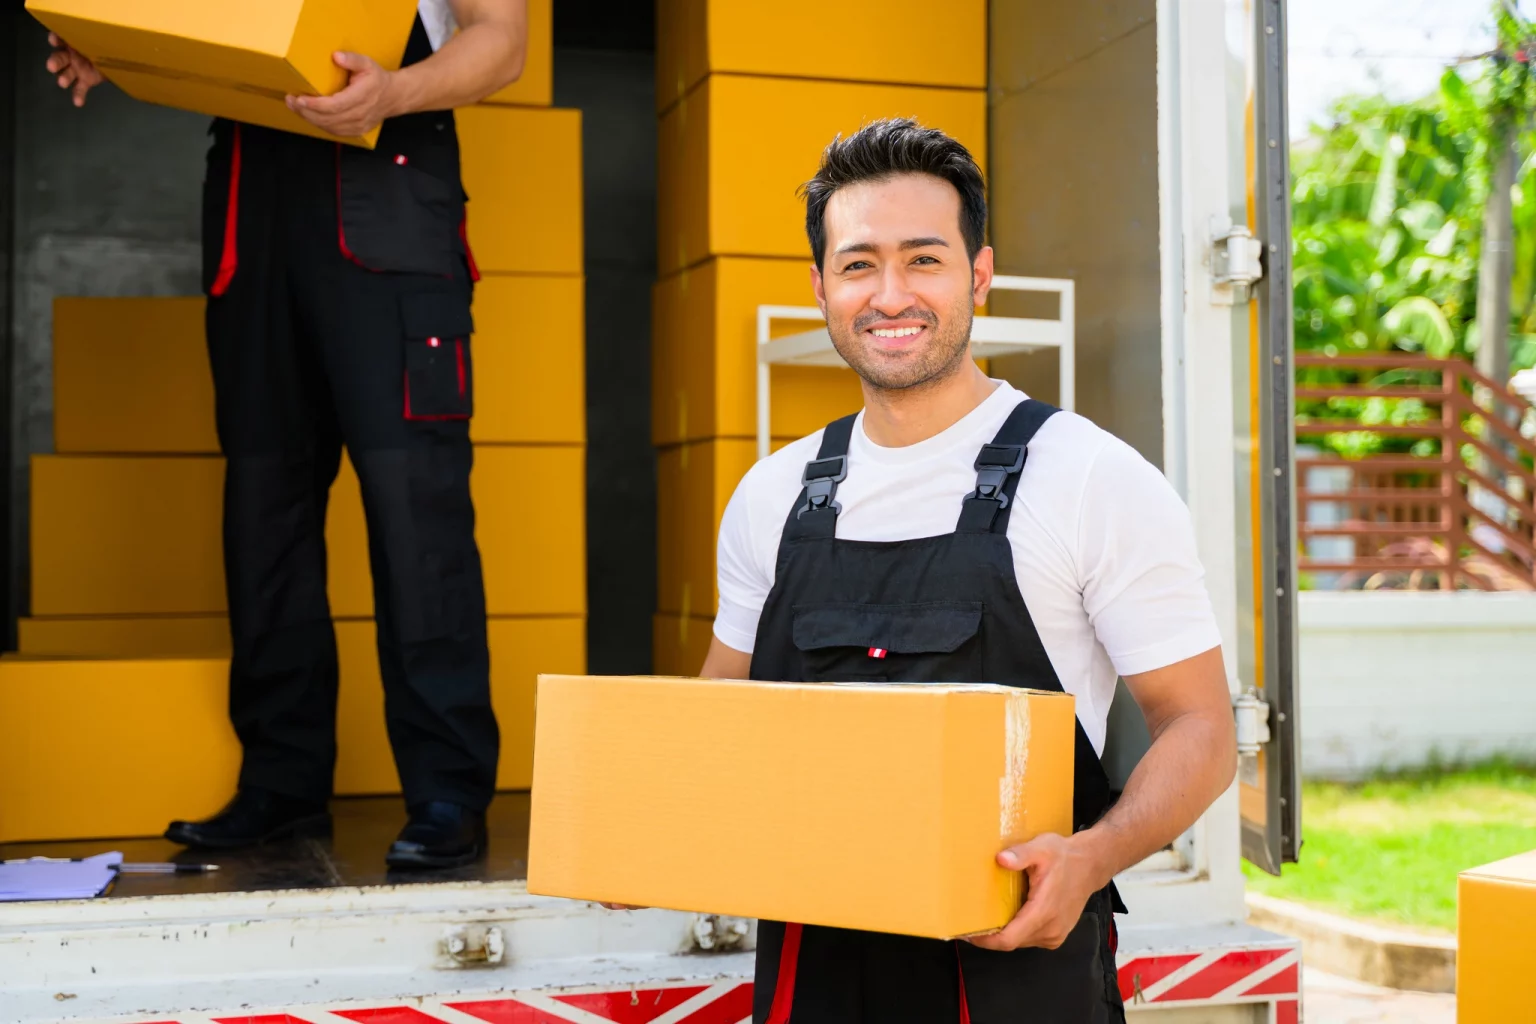 Livreur en uniforme tenant un colis près d'un camion de livraison, reflétant la logistique et la distribution dans le secteur du commerce de détail.